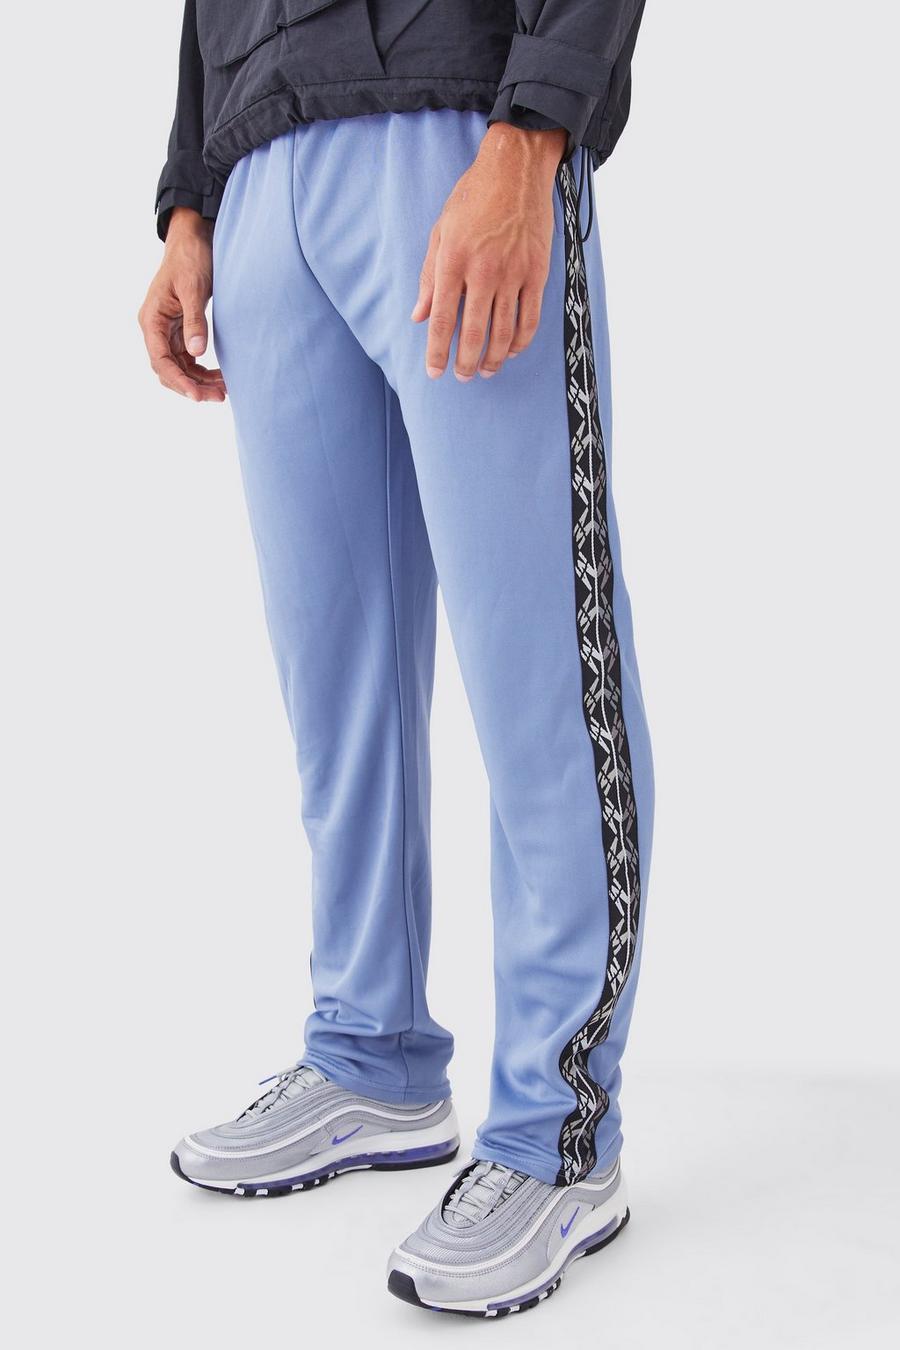 Pantaloni tuta Regular Fit in tricot con striscia laterale, Slate blue